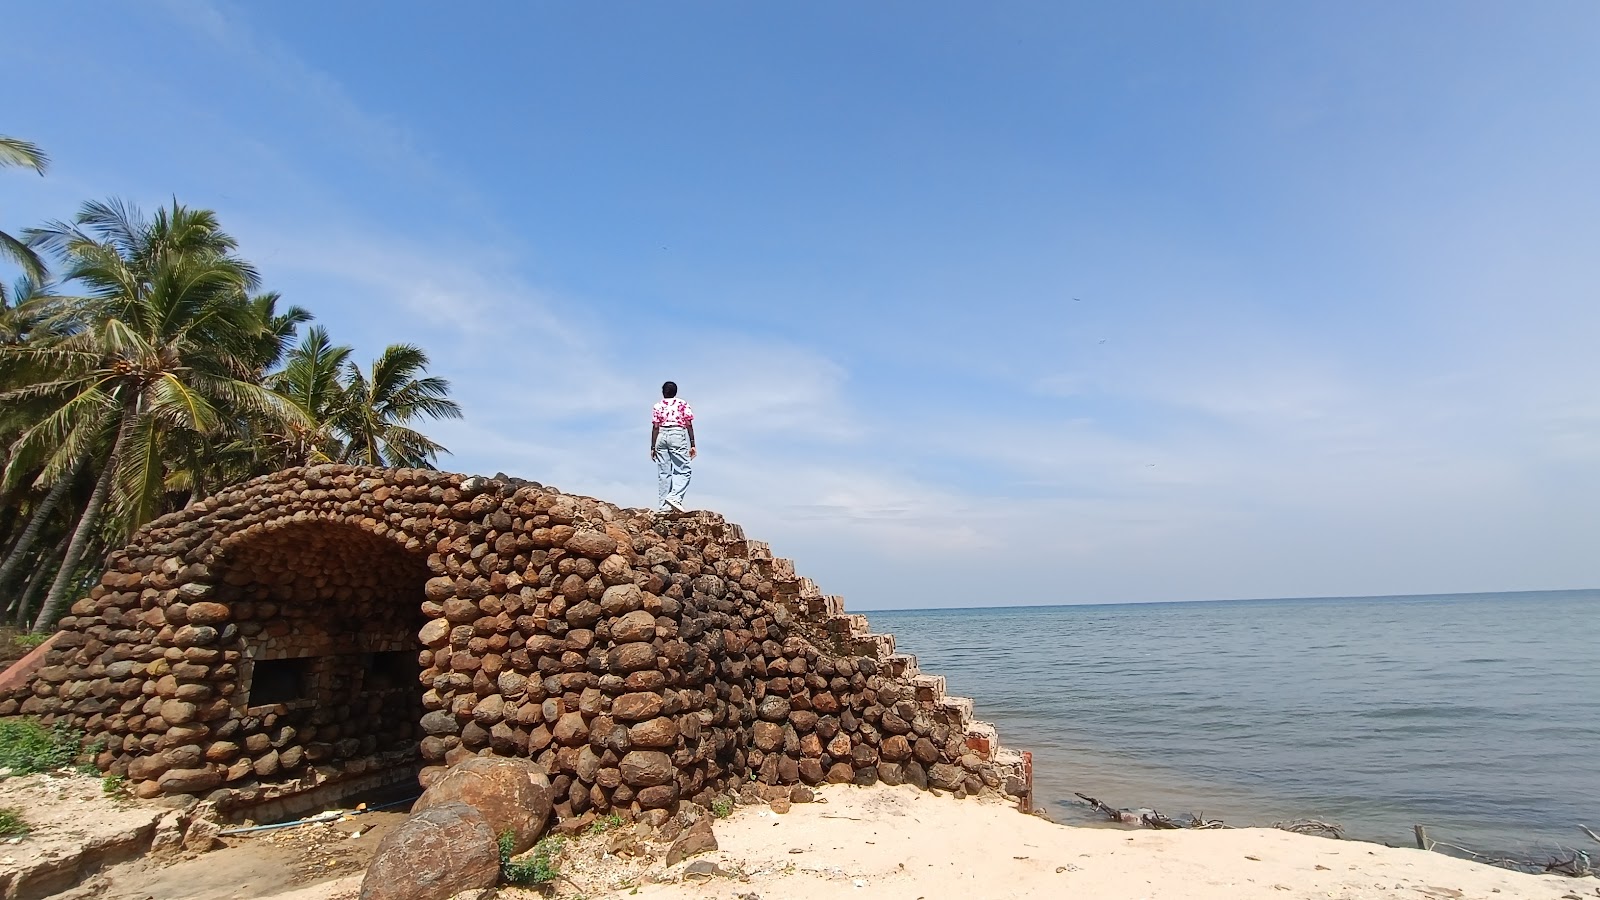 Sangumal Beach, Rameswaram'in fotoğrafı - rahatlamayı sevenler arasında popüler bir yer